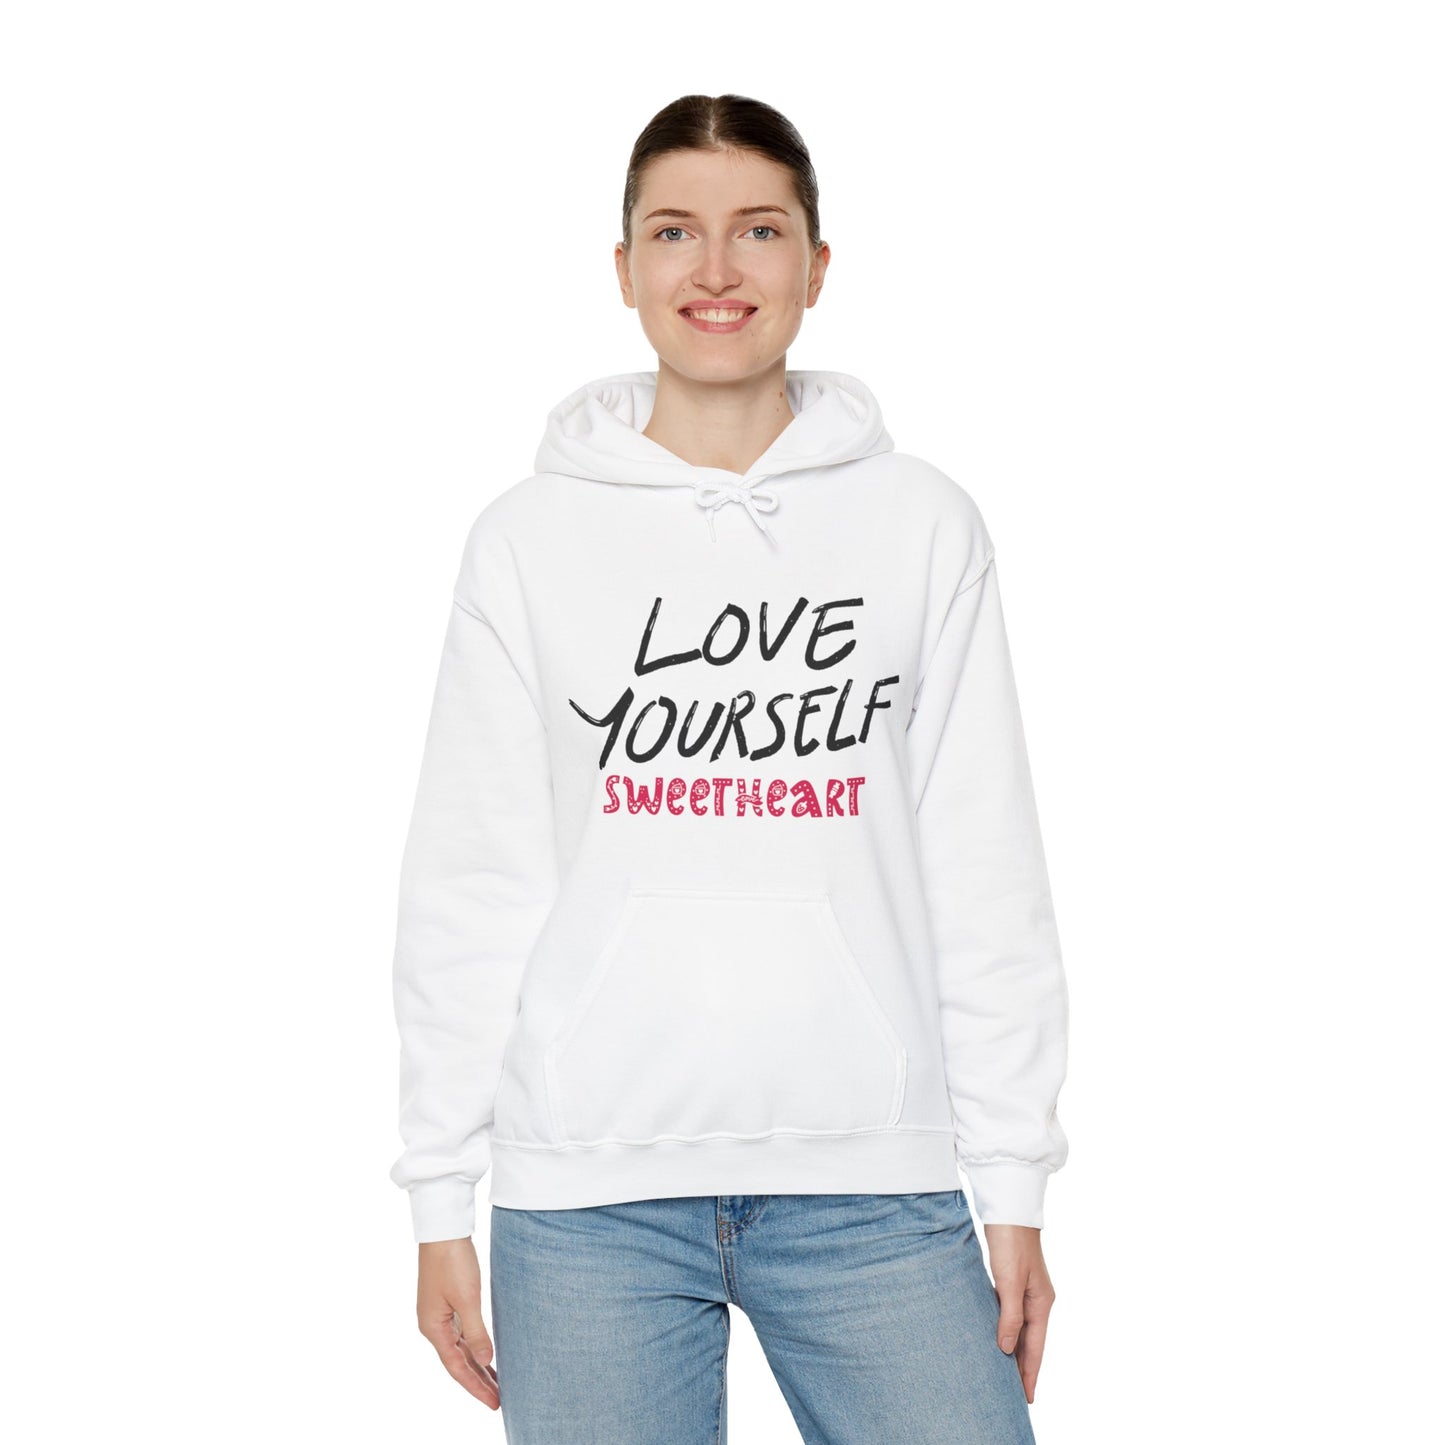 "Love Yourself" Unisex Hooded Sweatshirt